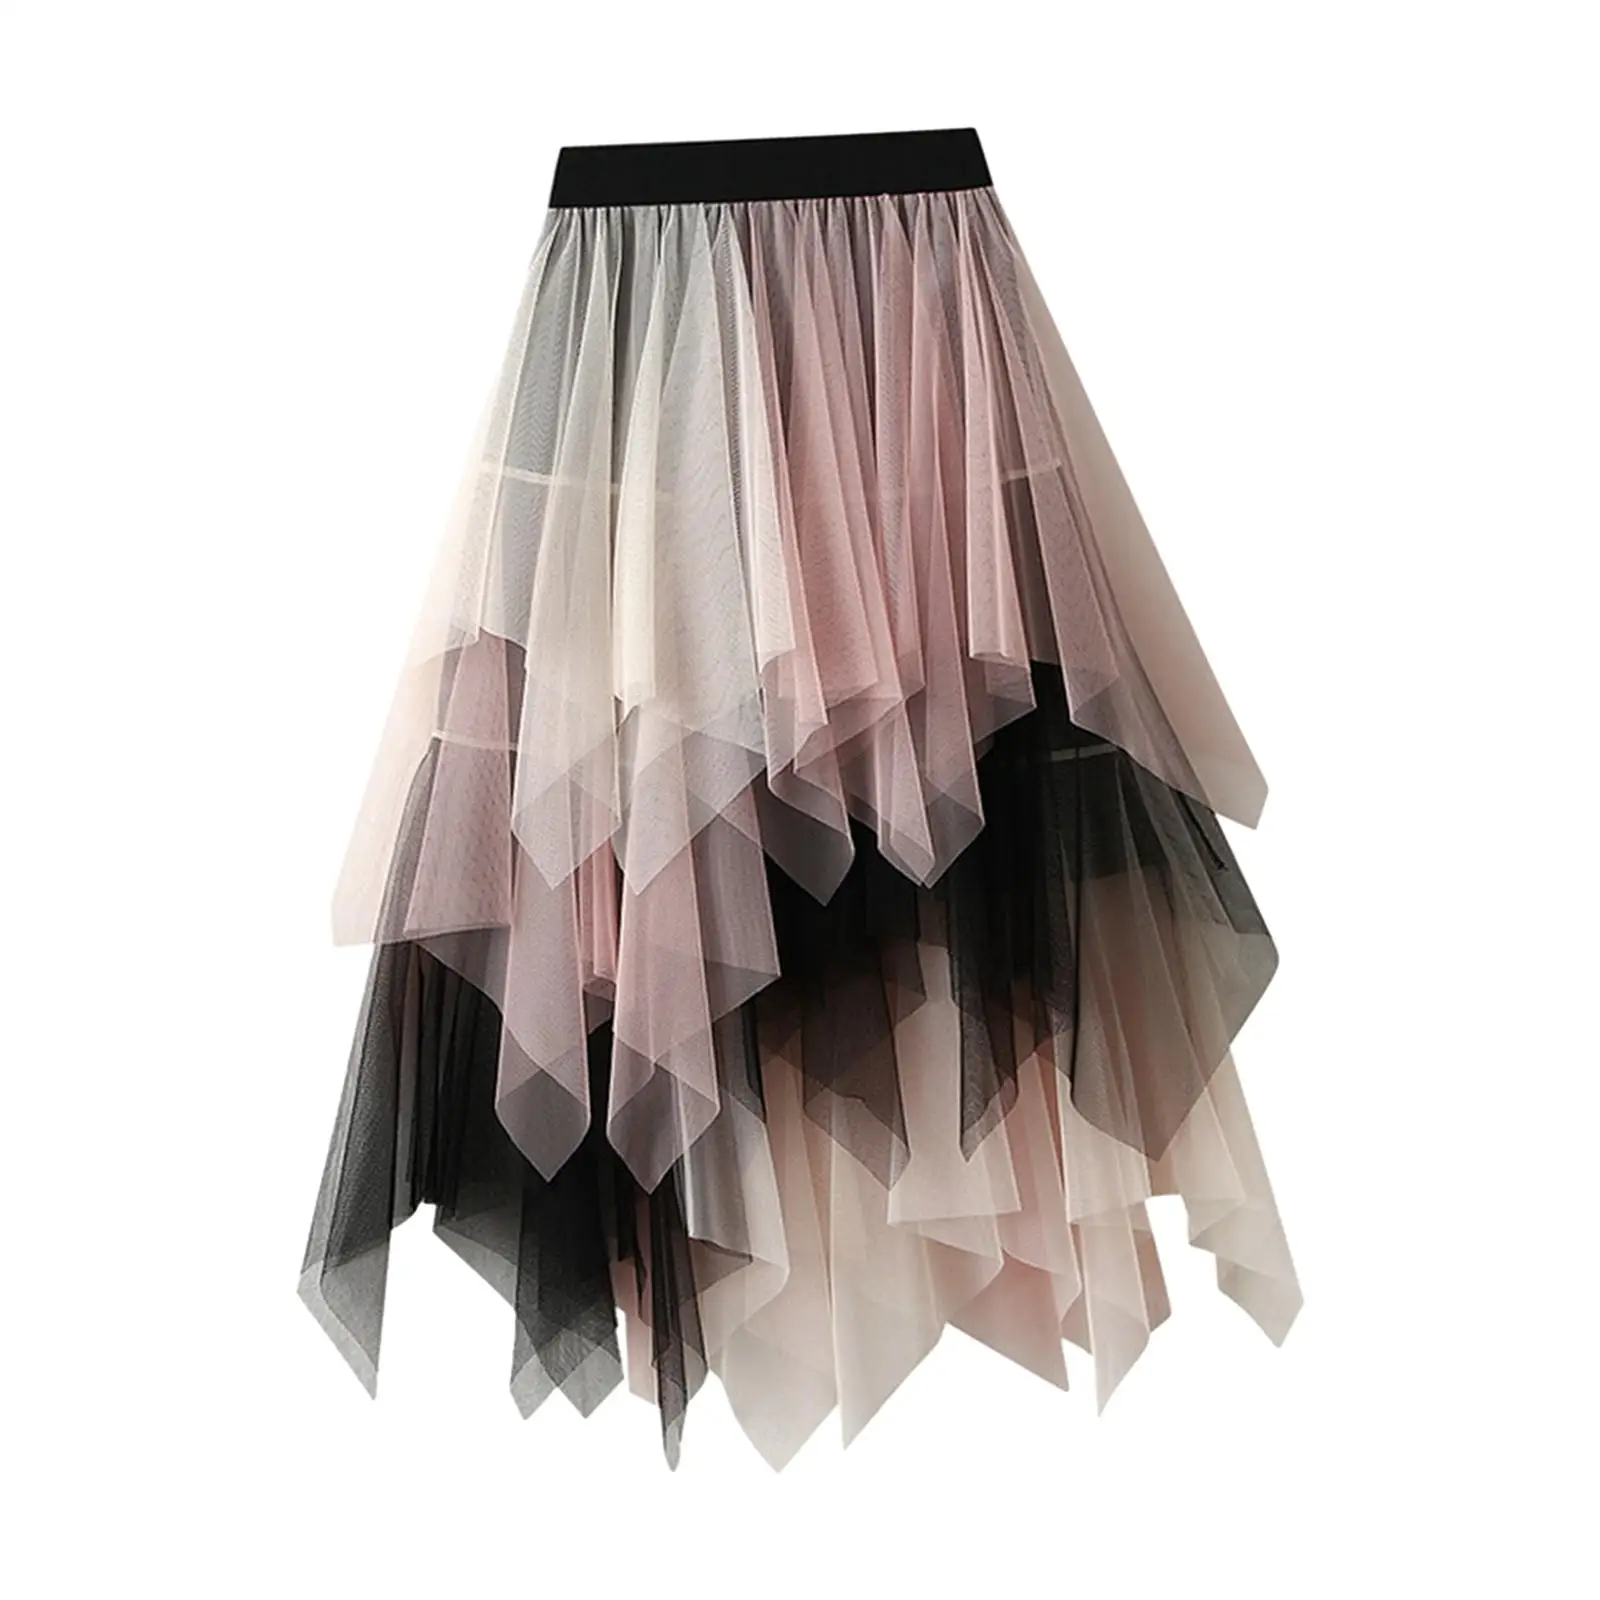 Tulle Skirts for Women Tutu Skirt Elastic High Waist Dress Fairy Skirt Half Skirt for Formal Evening Party Wedding Daily Wear